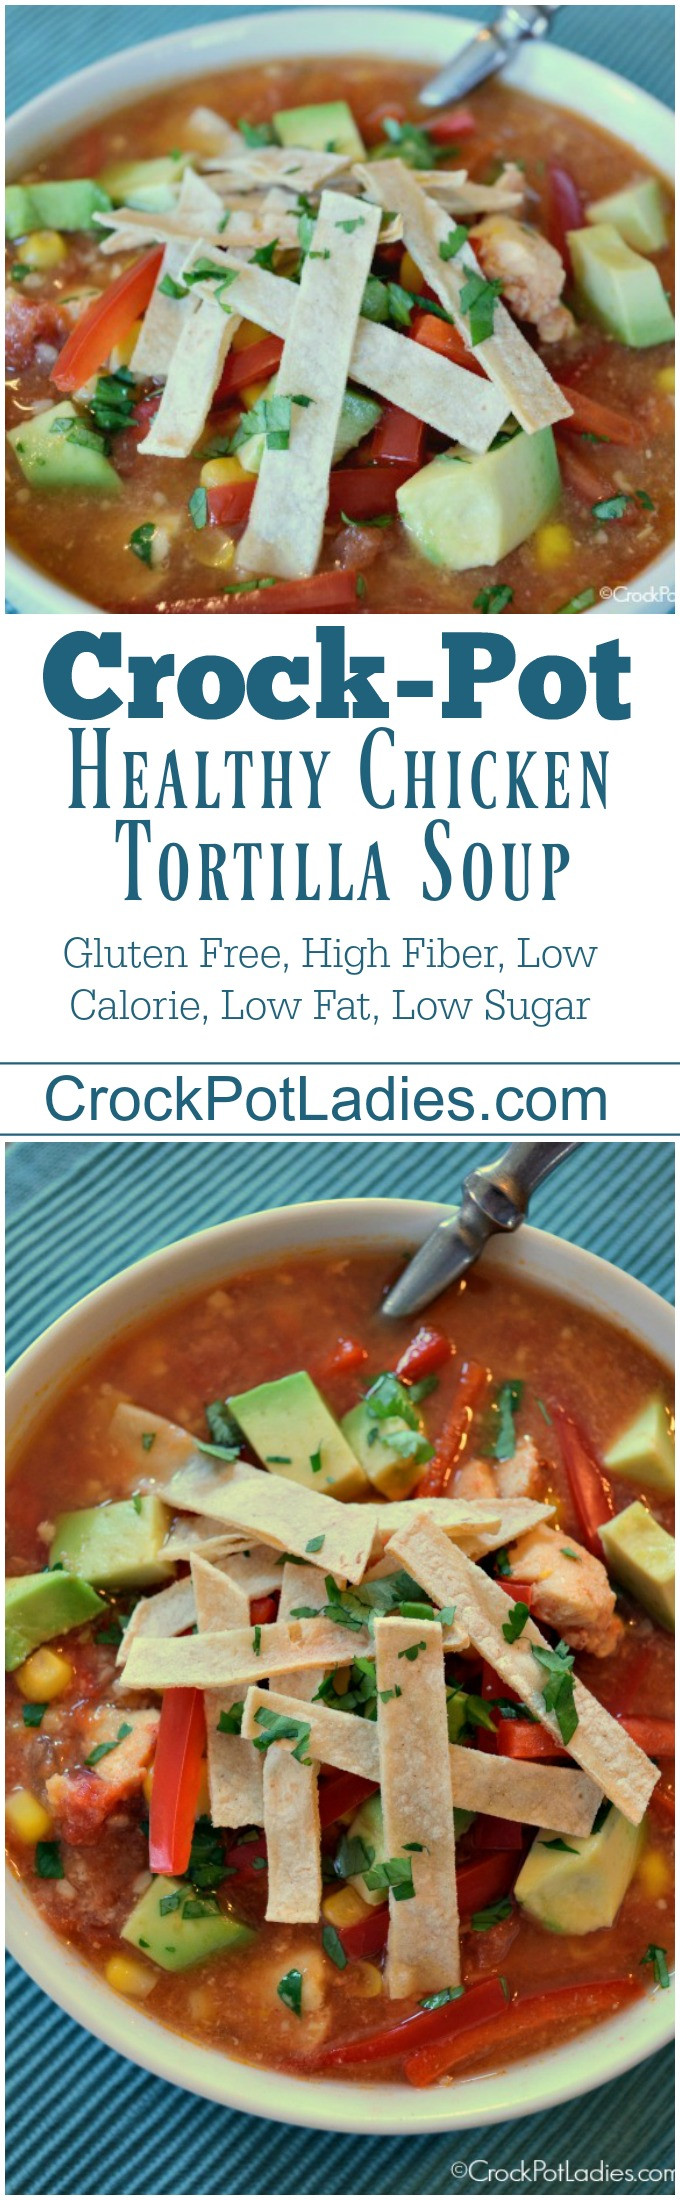 Healthy Low Calorie Crock Pot Recipes
 Crock Pot Healthy Chicken Tortilla Soup Crock Pot La s